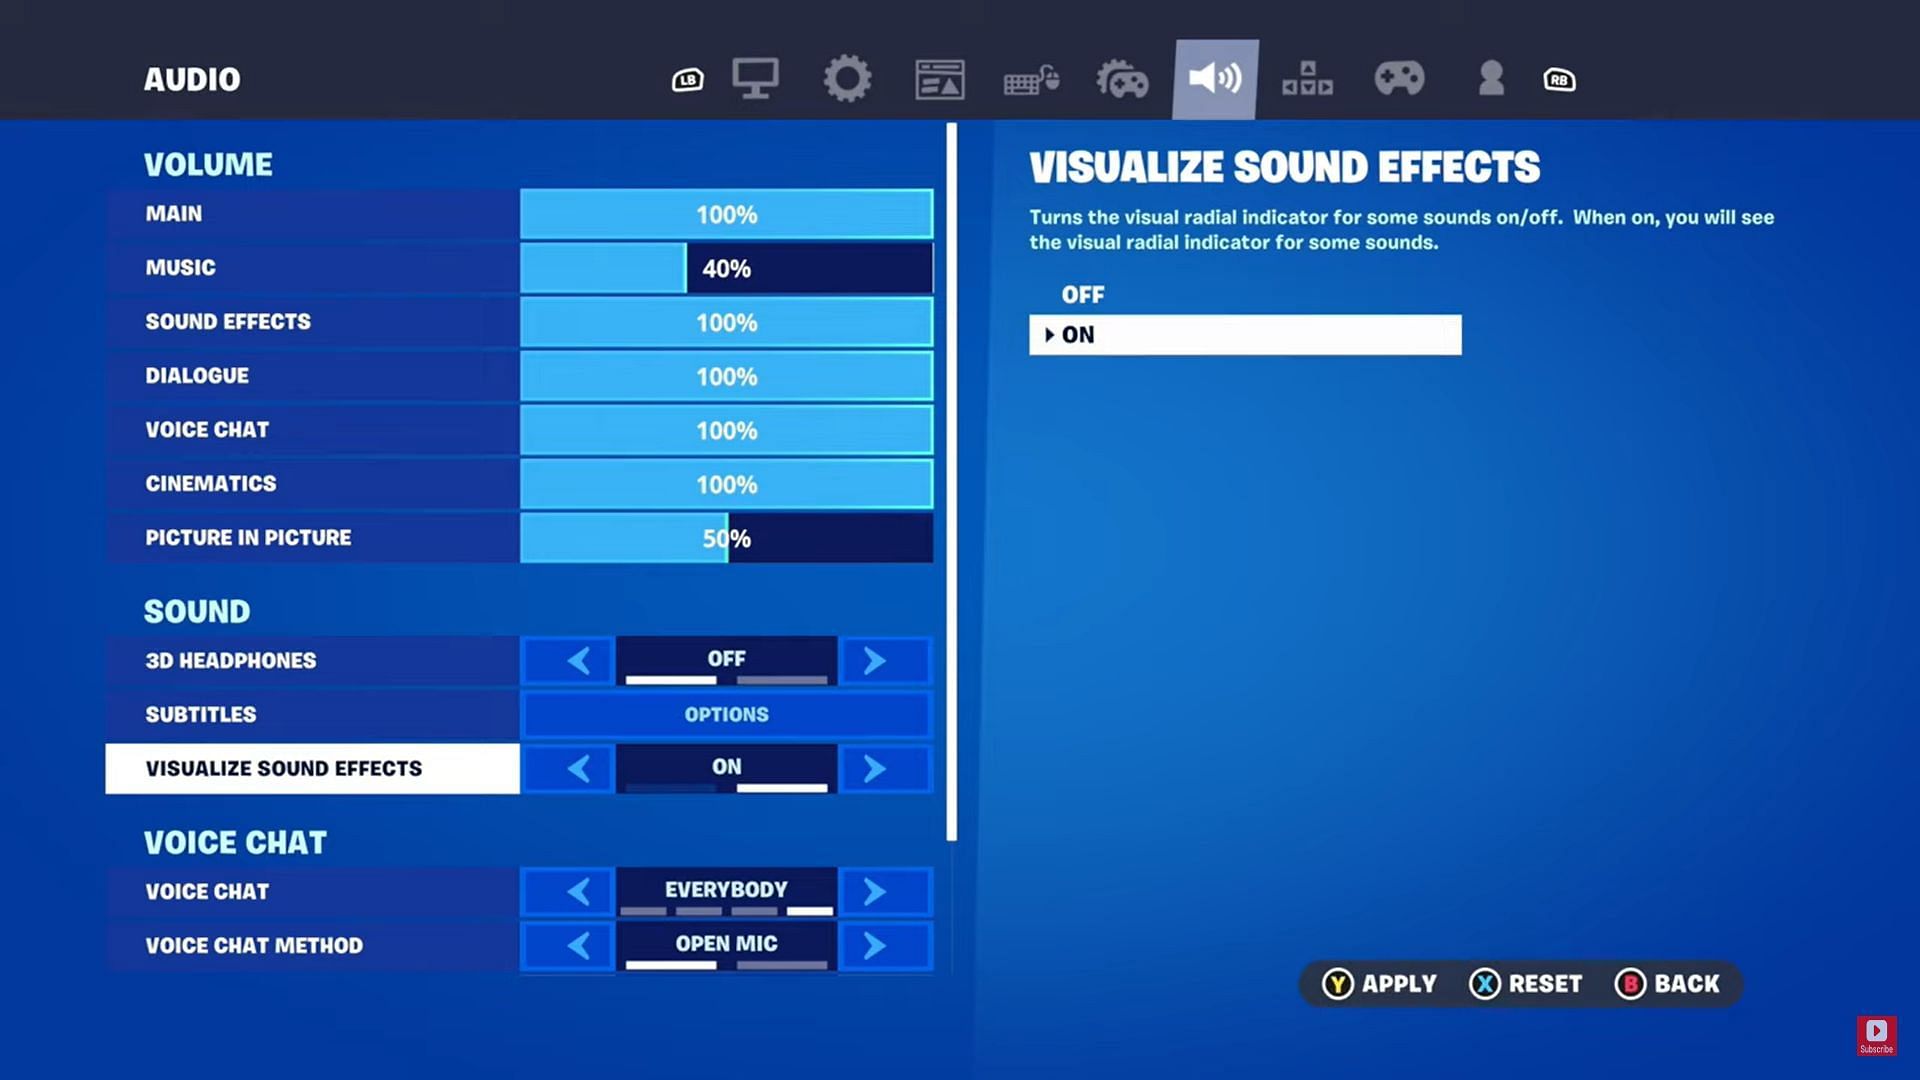 Visualize Sound Effects (Image via YourSixGaming on YouTube)